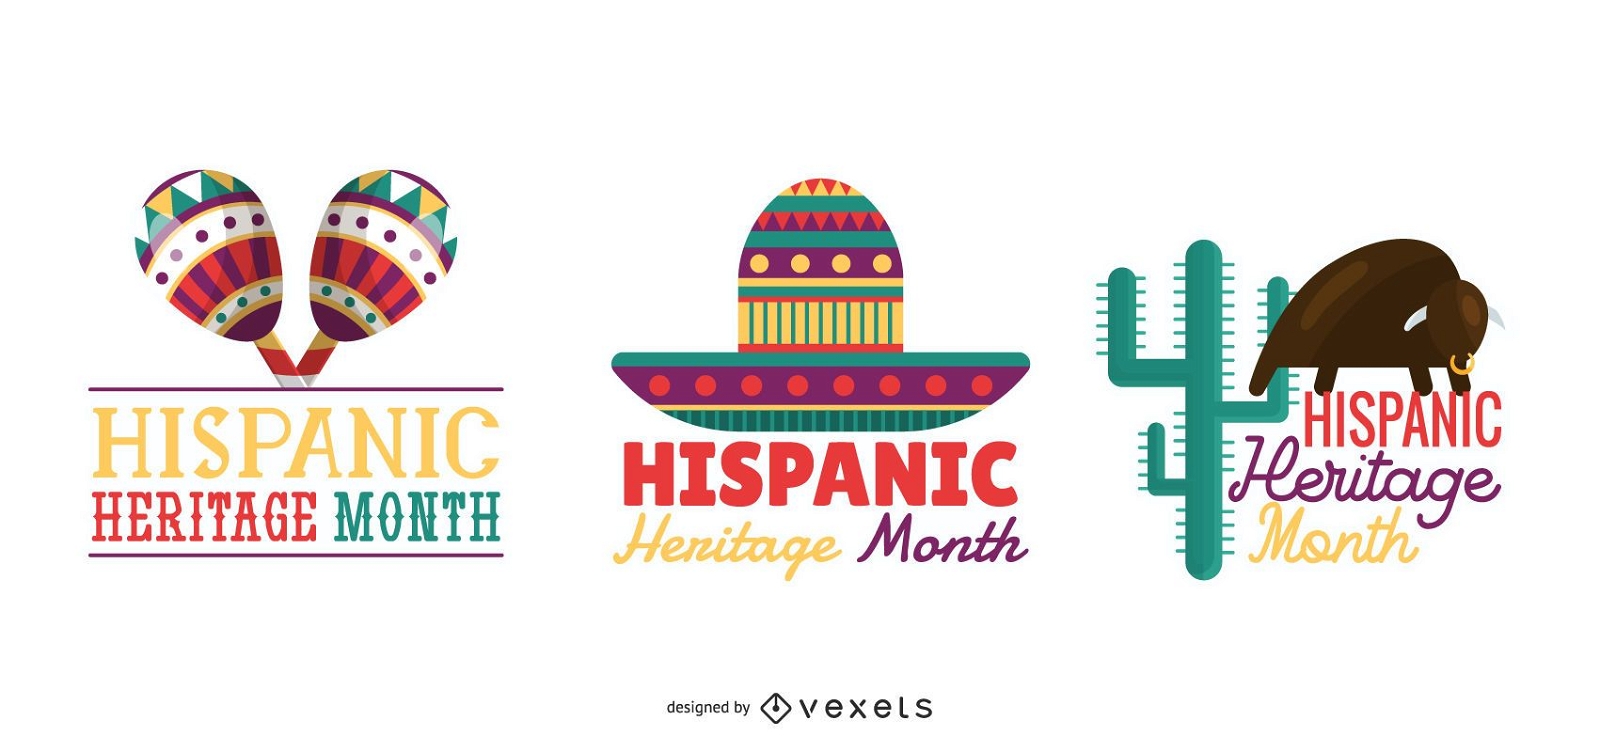 PIX11's Hispanic Heritage Month Icons